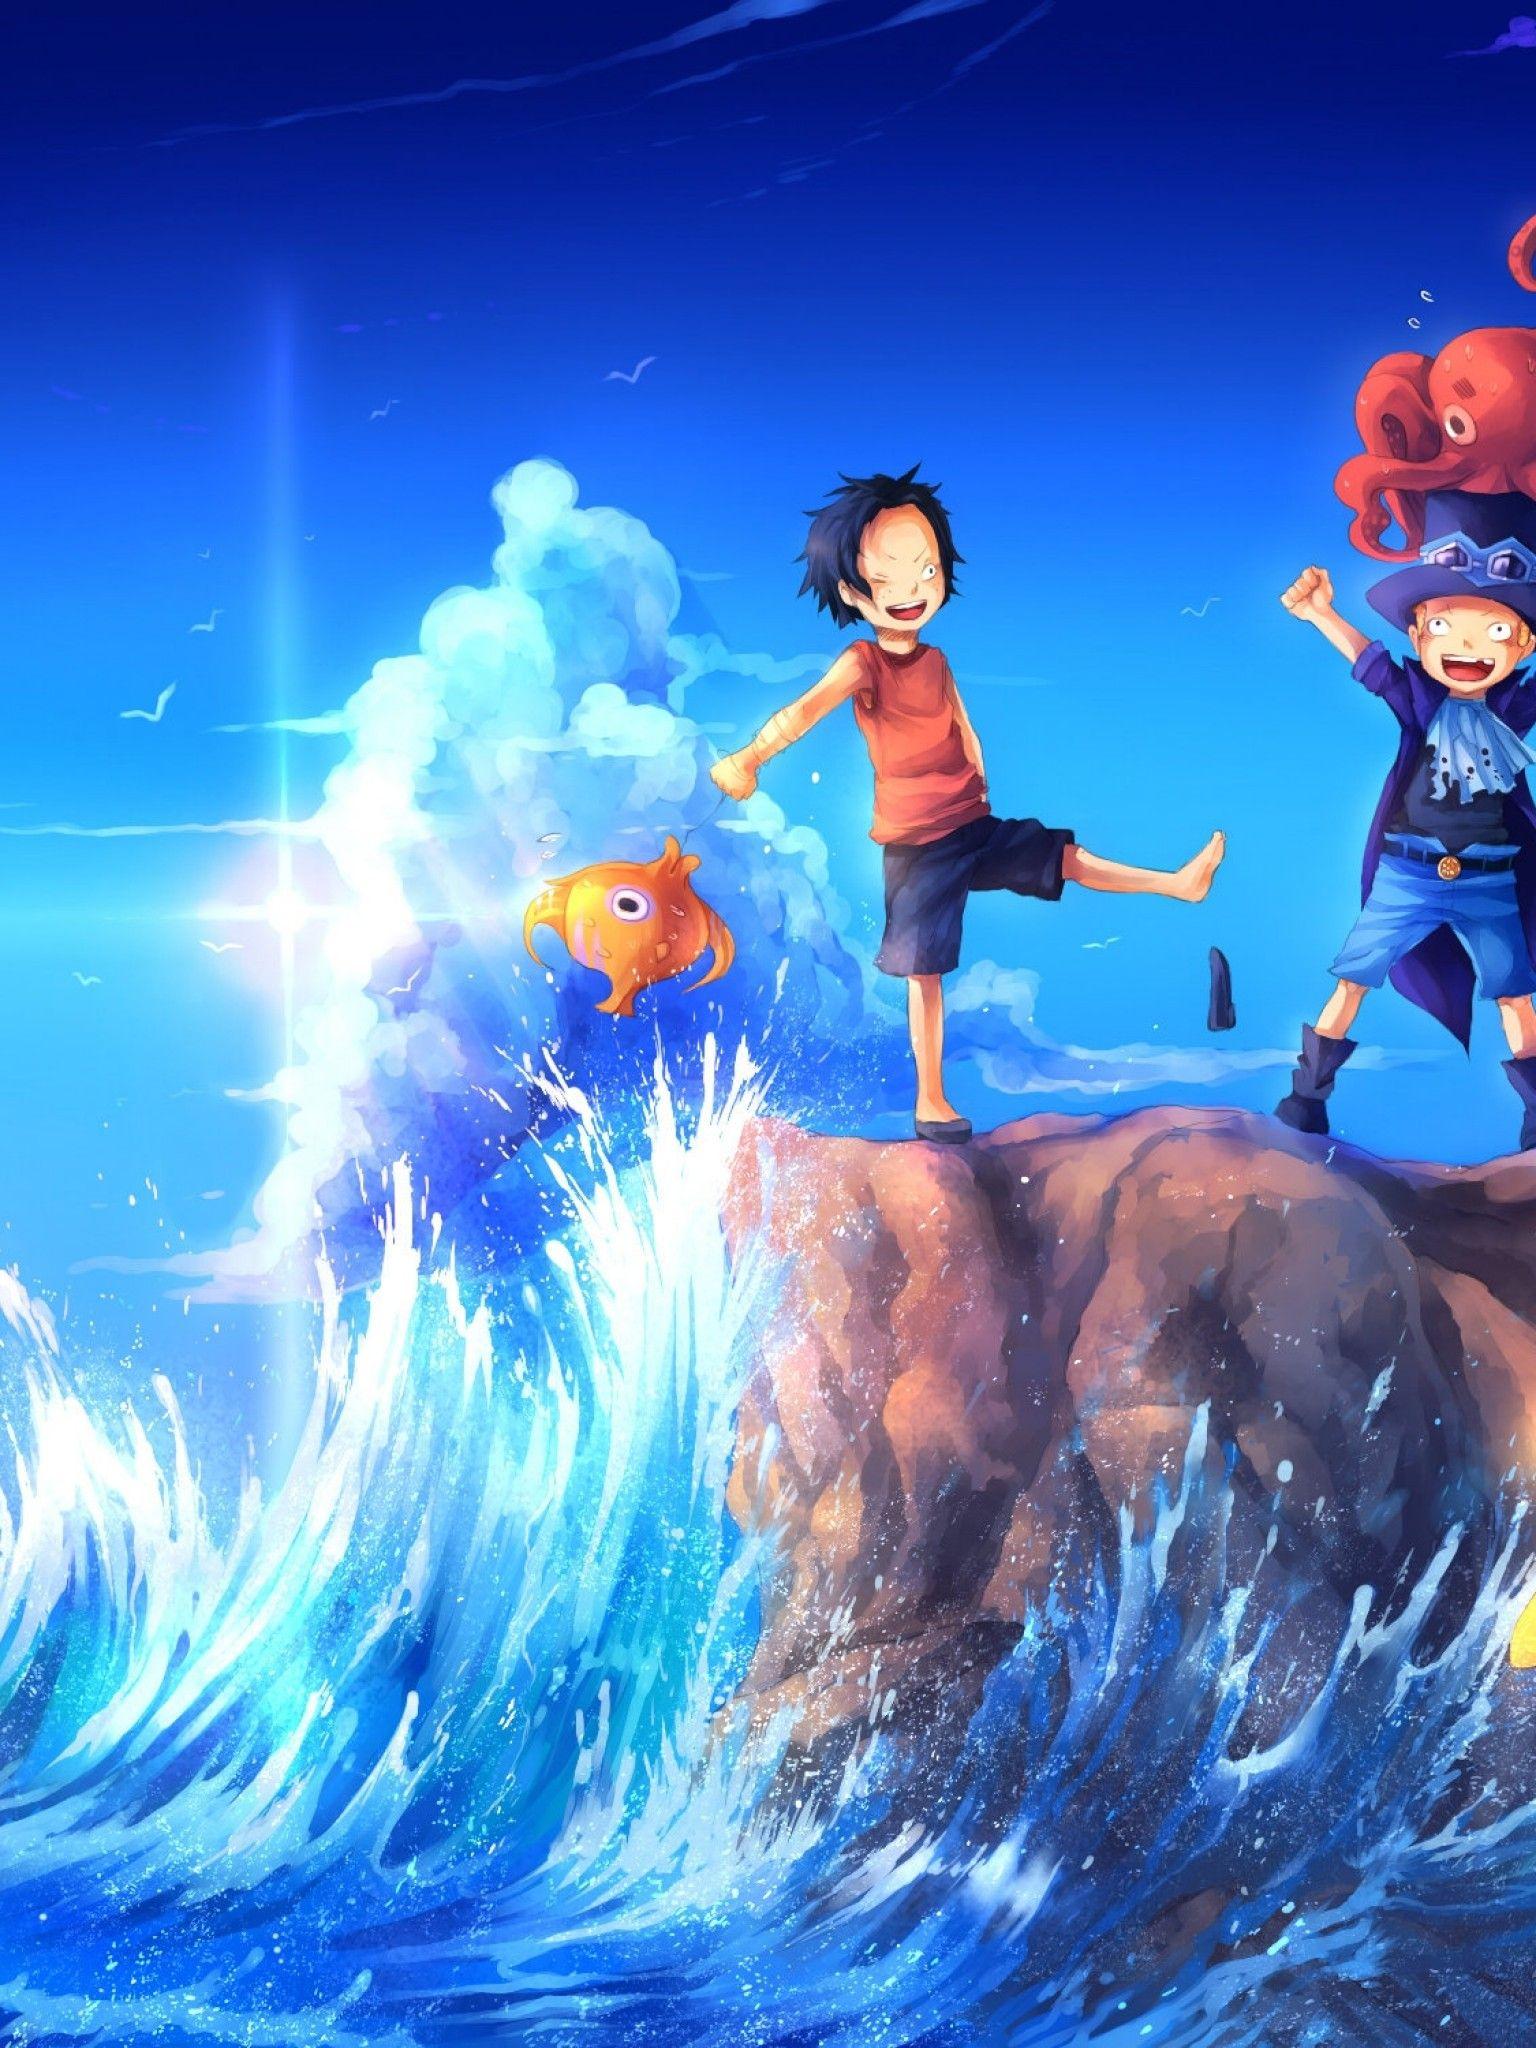 Dành cho những ai yêu thích One Piece và sở hữu iPad, hãy tìm ngay đến hình nền của bộ phim để tận hưởng những khoảnh khắc đẹp nhất. Tất cả các màn hình chính của iPad đều có thể trang trí với những hình ảnh đầy màu sắc và nghẹt thở.